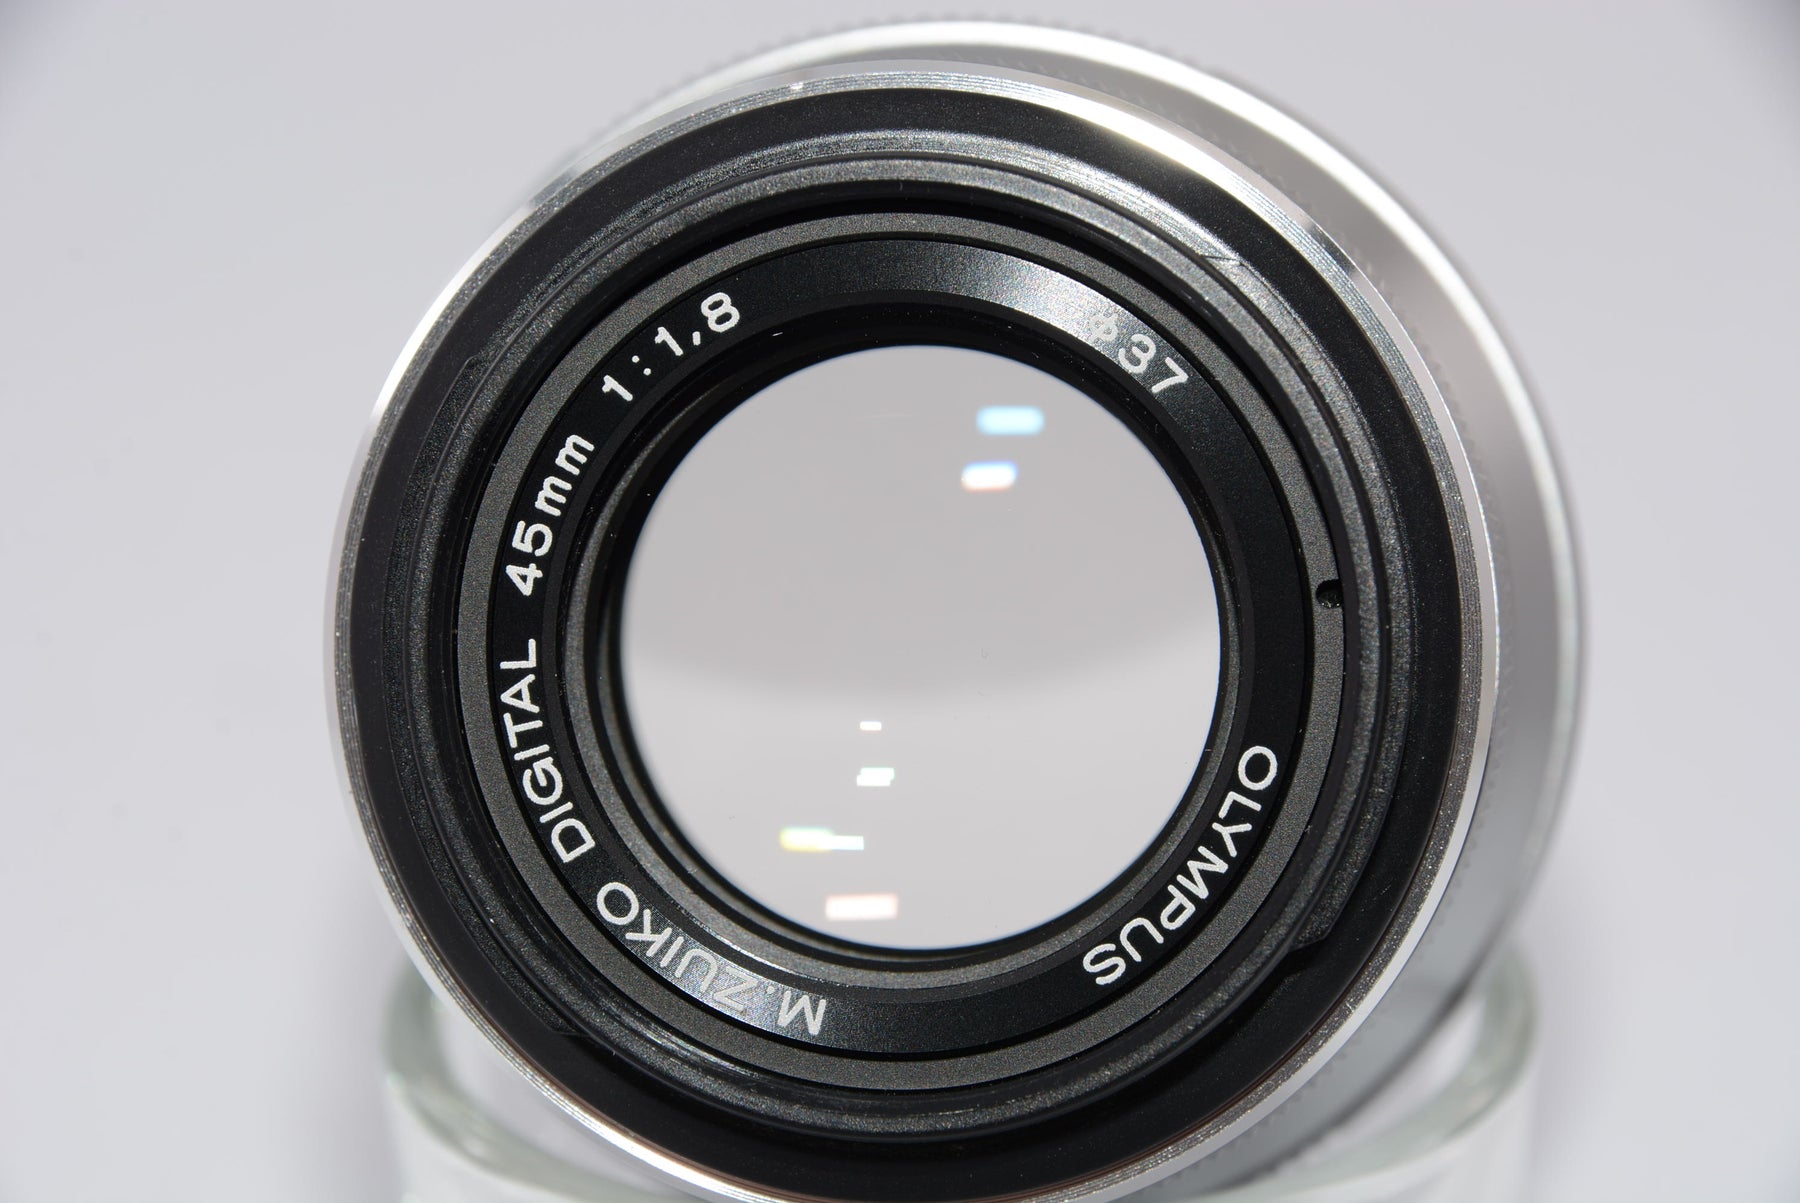 【オススメ】OLYMPUS 単焦点レンズ M.ZUIKO DIGITAL 45mm F1.8 シルバー